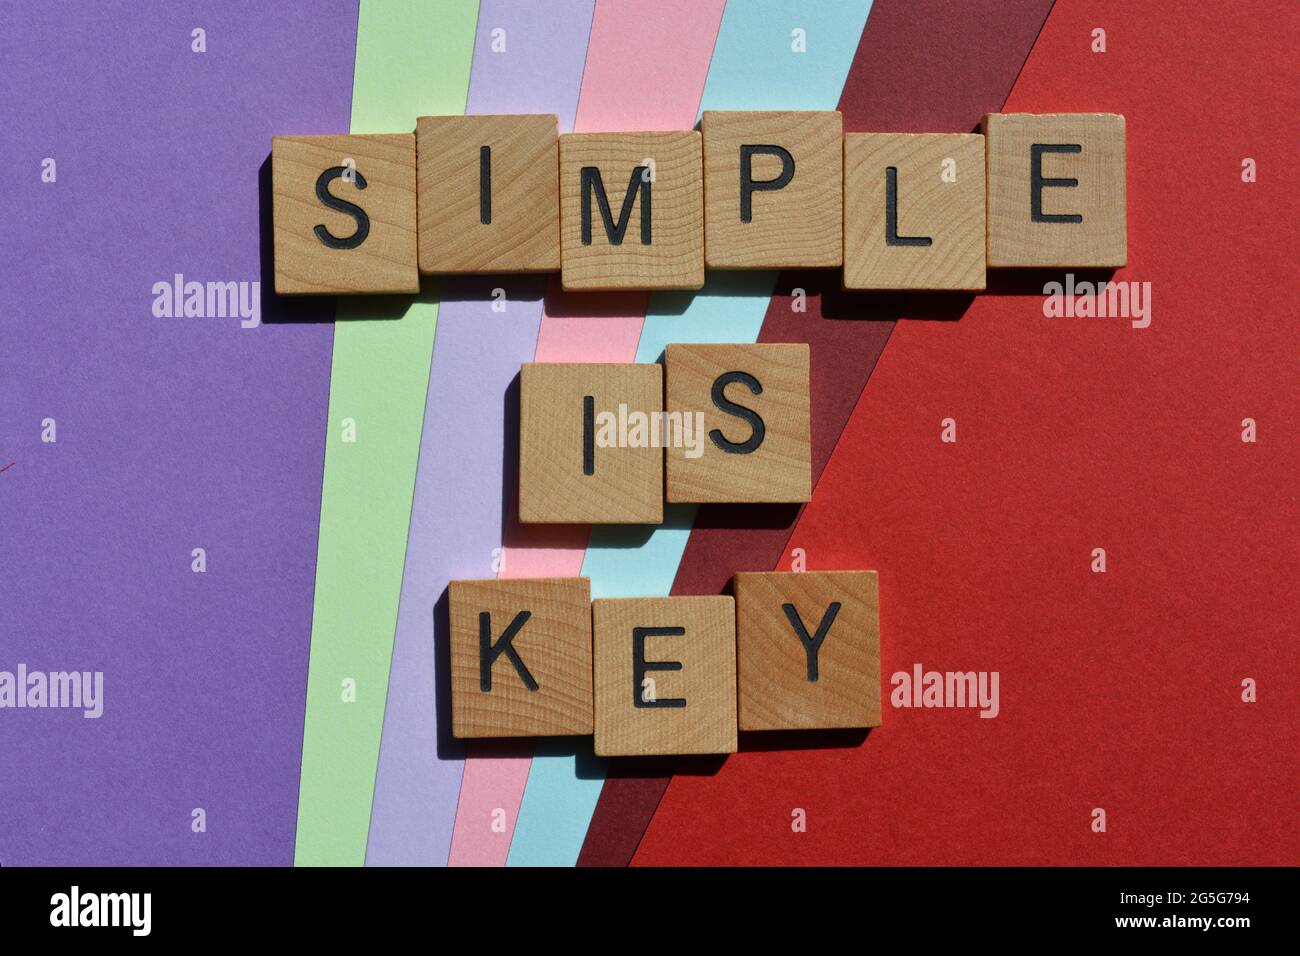 Semplice è chiave, parole in lettere alfabetiche in legno isolate su sfondo colorato Foto Stock